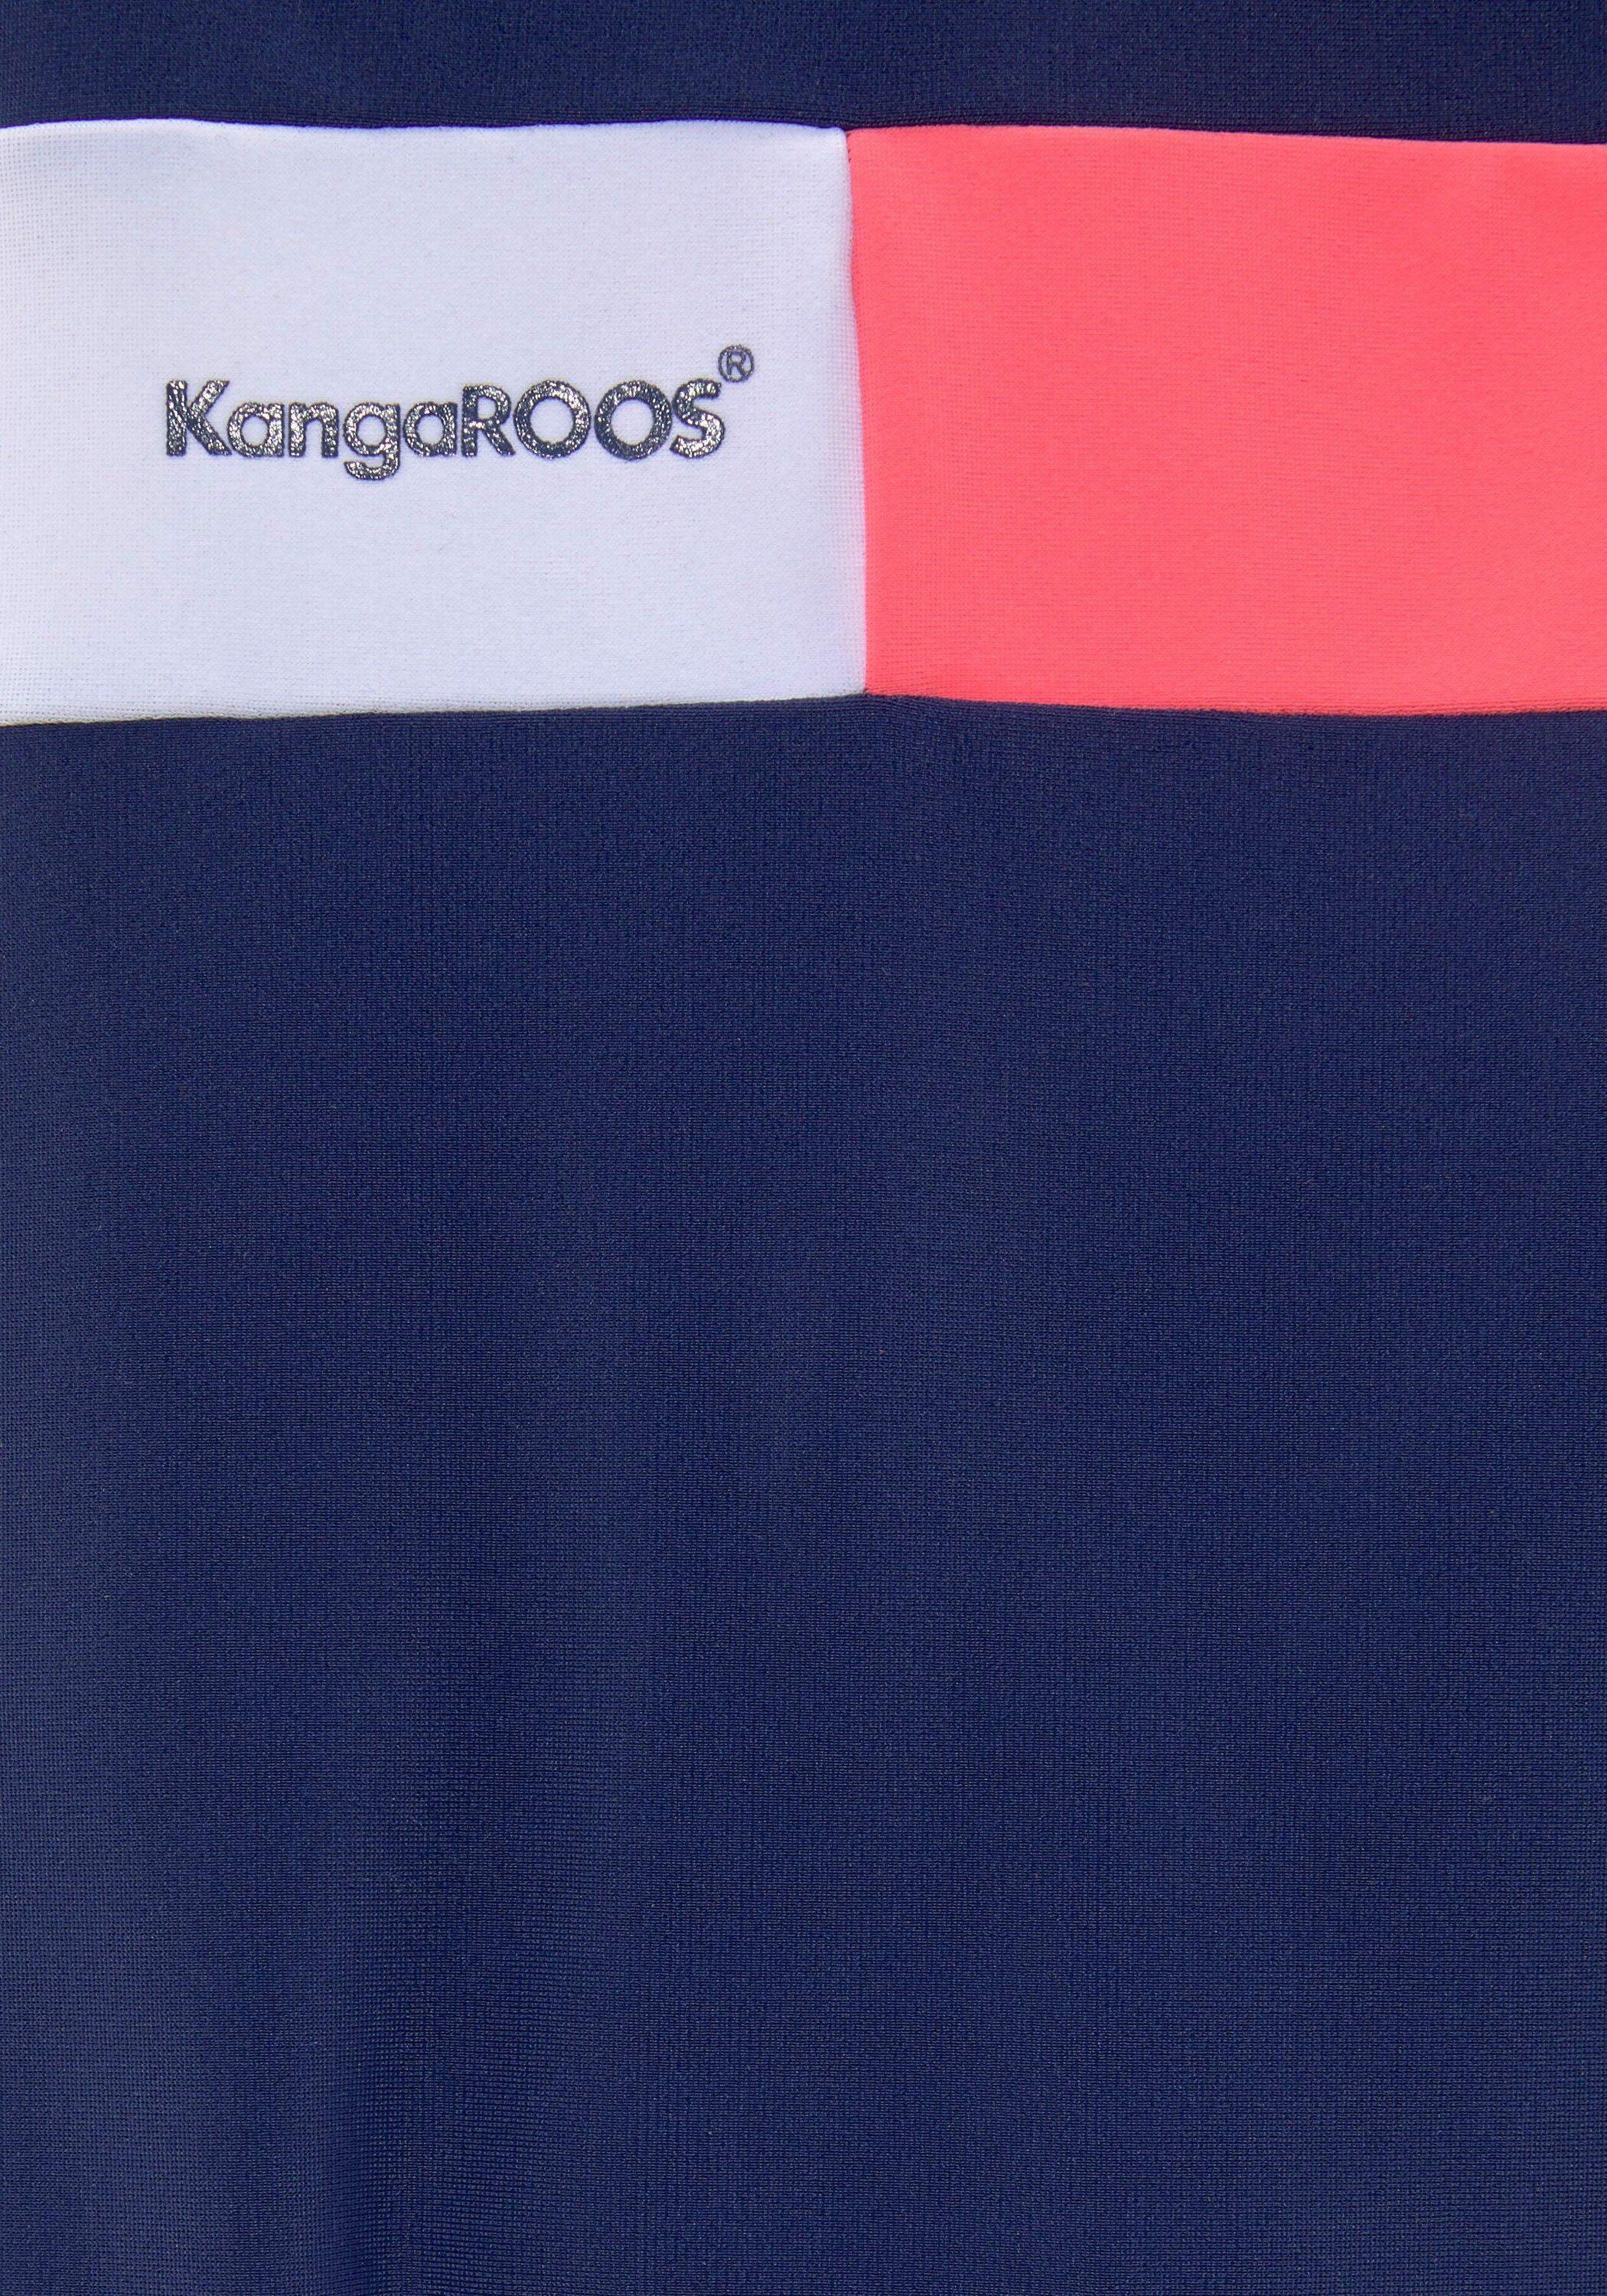 KangaROOS Badeanzug Damen marine-pink-weiß von SportScheck im Online kaufen Shop